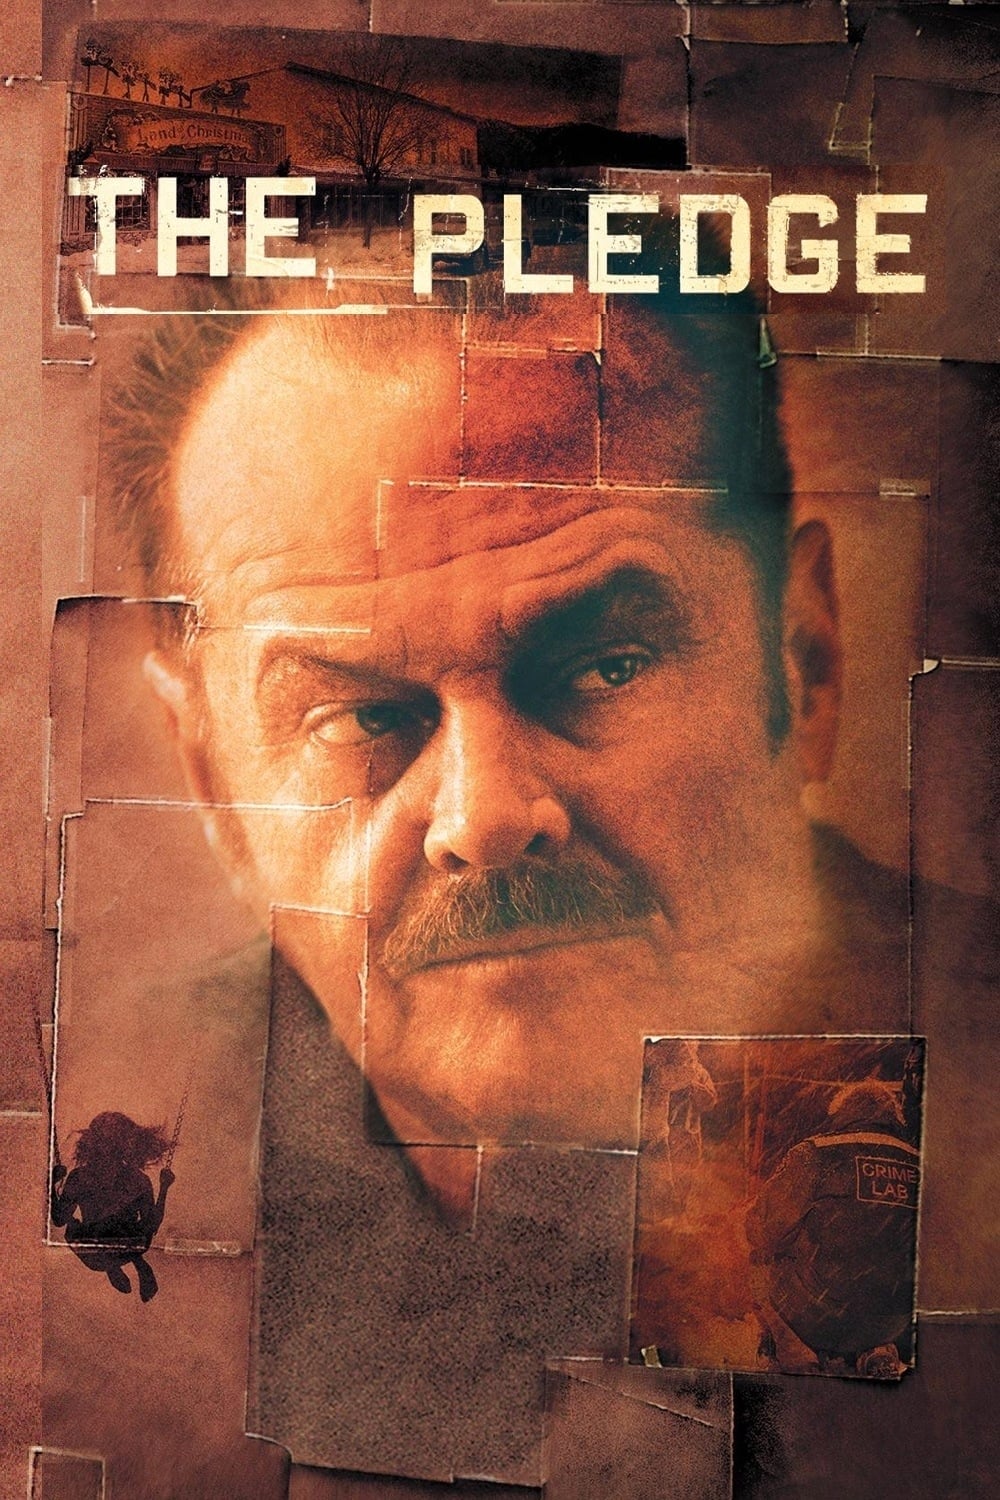 The Pledge (2001)